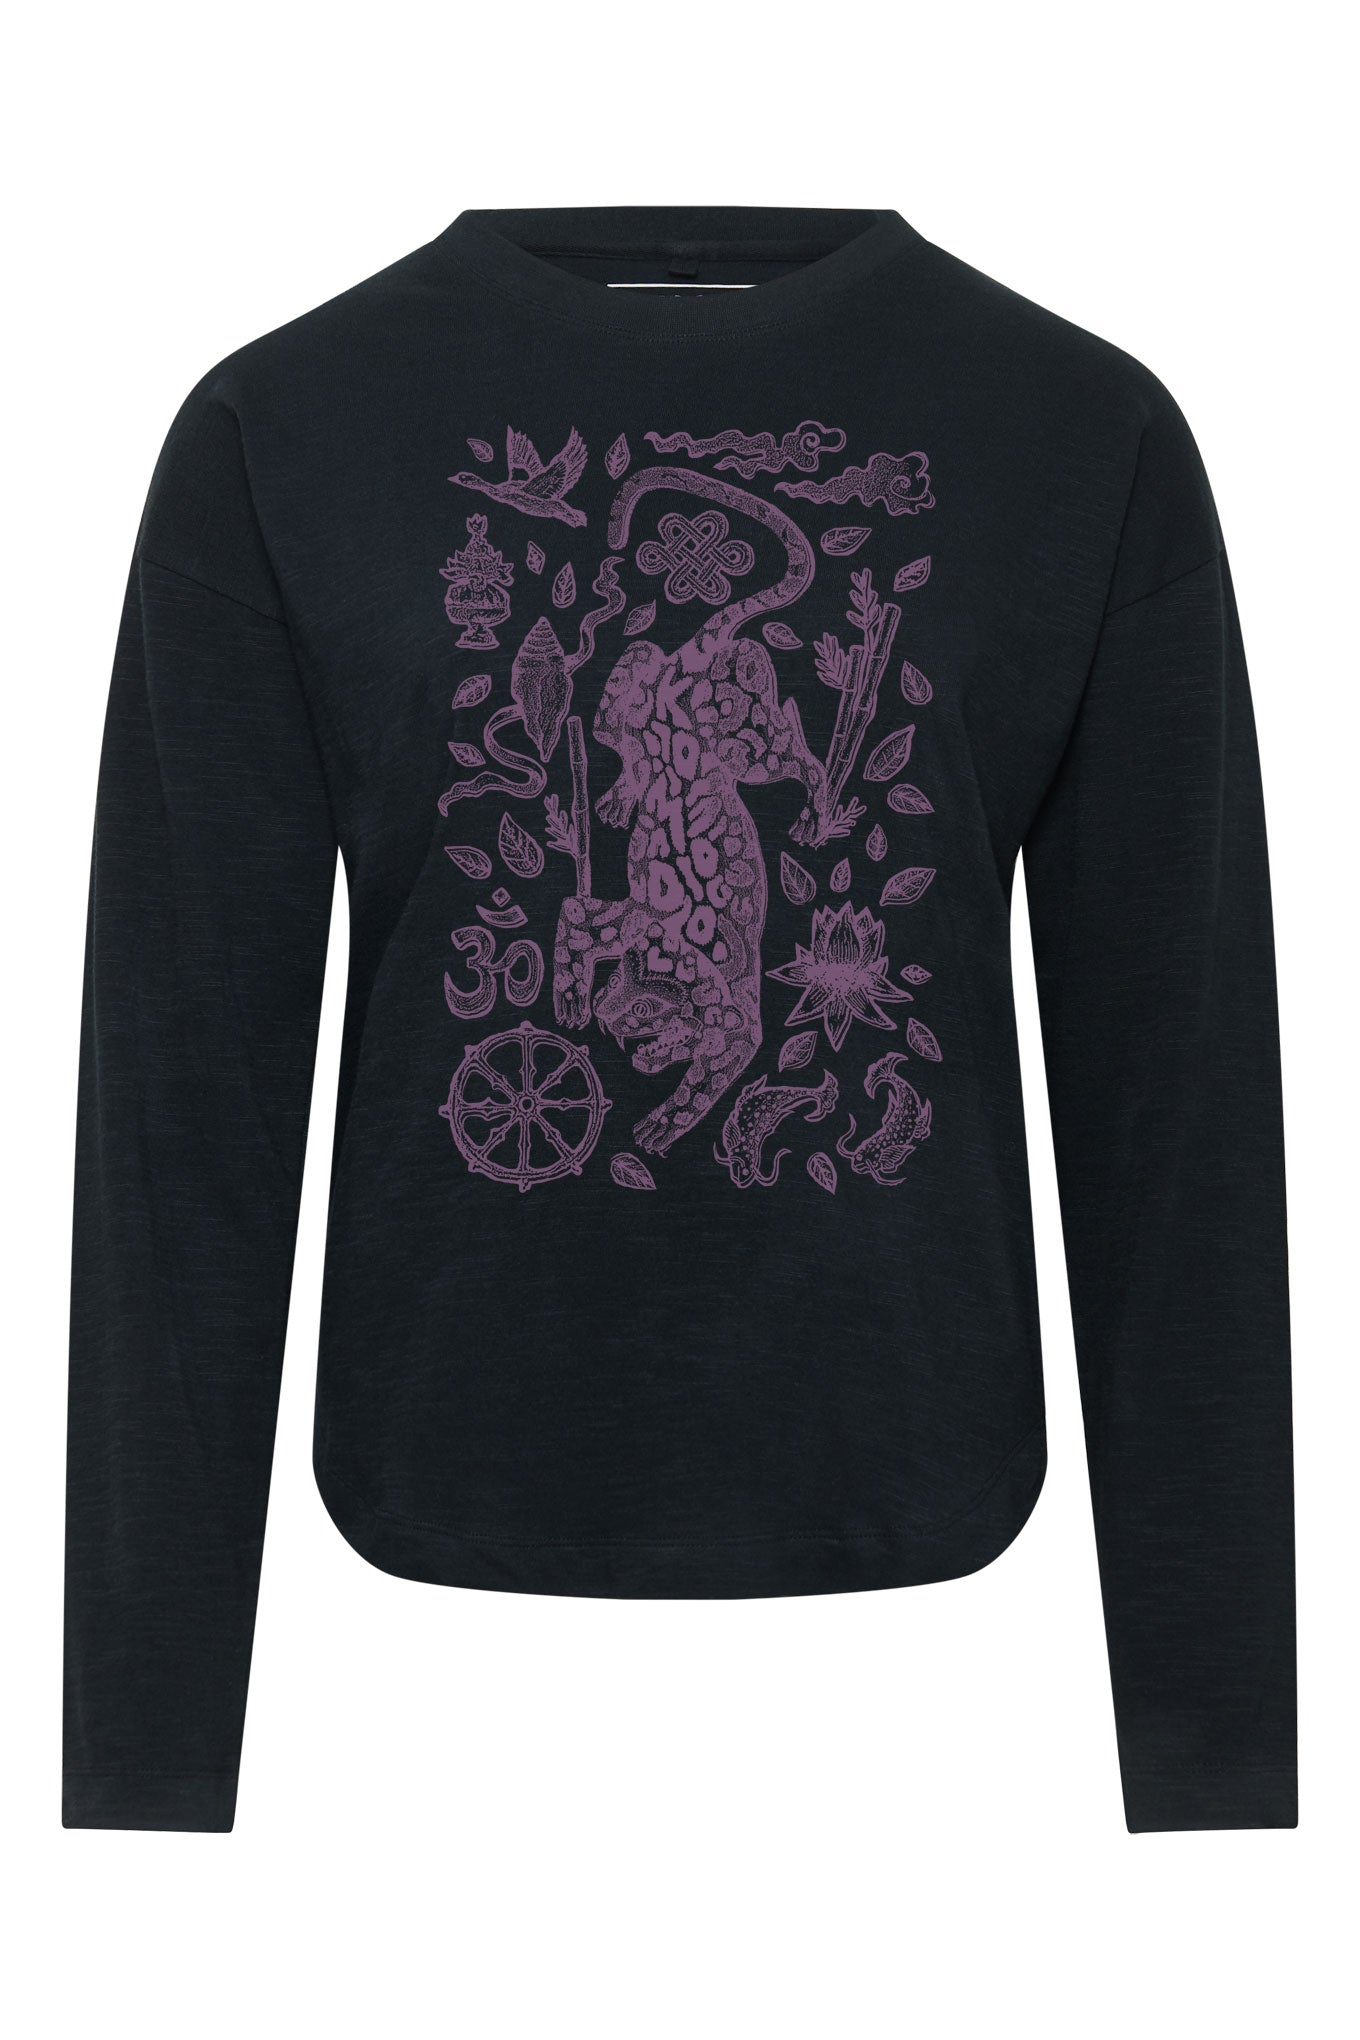 Schwarzes, langärmliges Shirt NEPALI LEOPARD aus 100% Bio-Baumwolle von Komodo